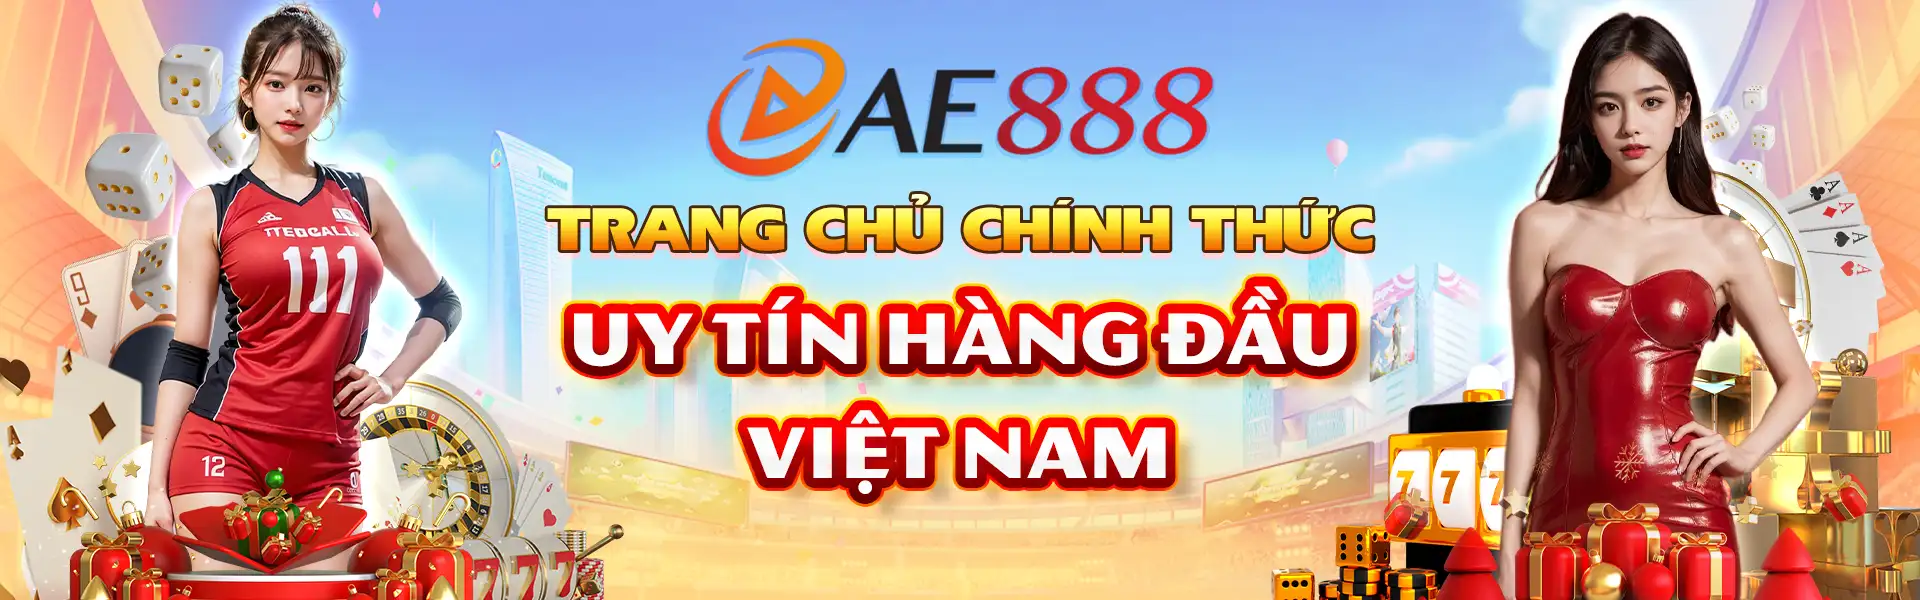 Ae888 - Trang chủ chính thức hàng đầu Việt Nam